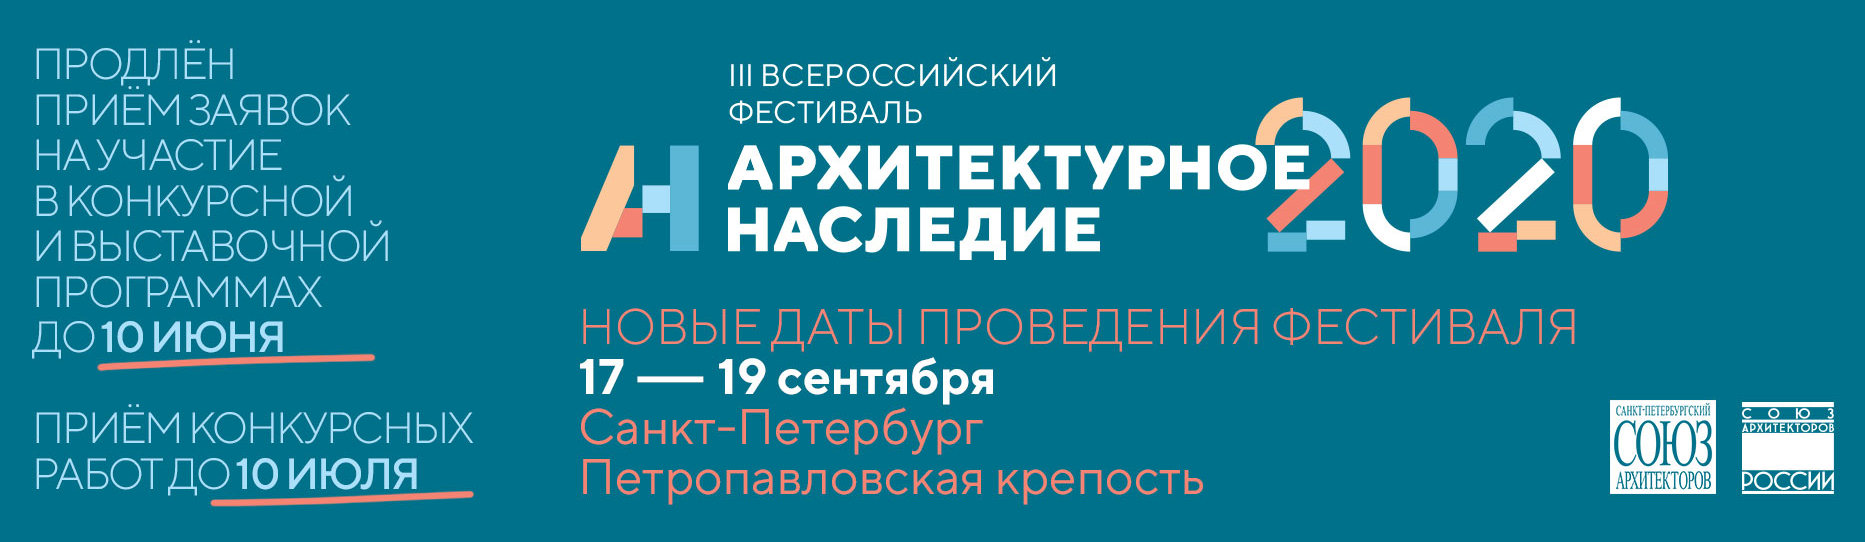 III Всероссийский фестиваль «Архитектурное наследие»